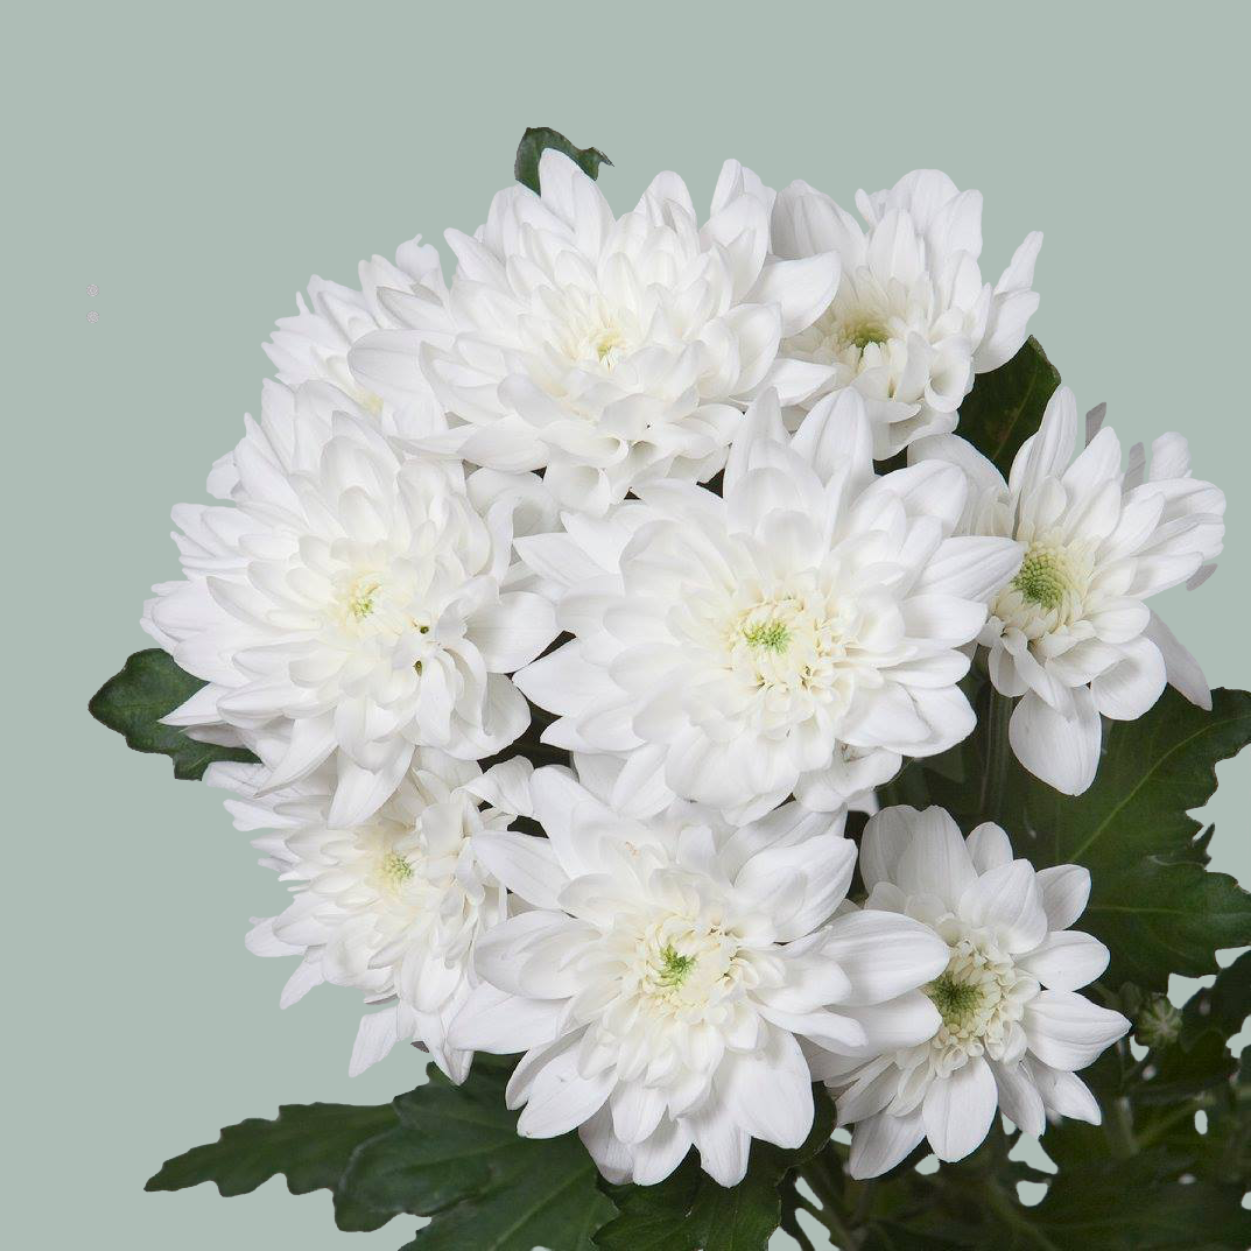 Chrysanthemum Spray Pina Colada White (20 Stems)